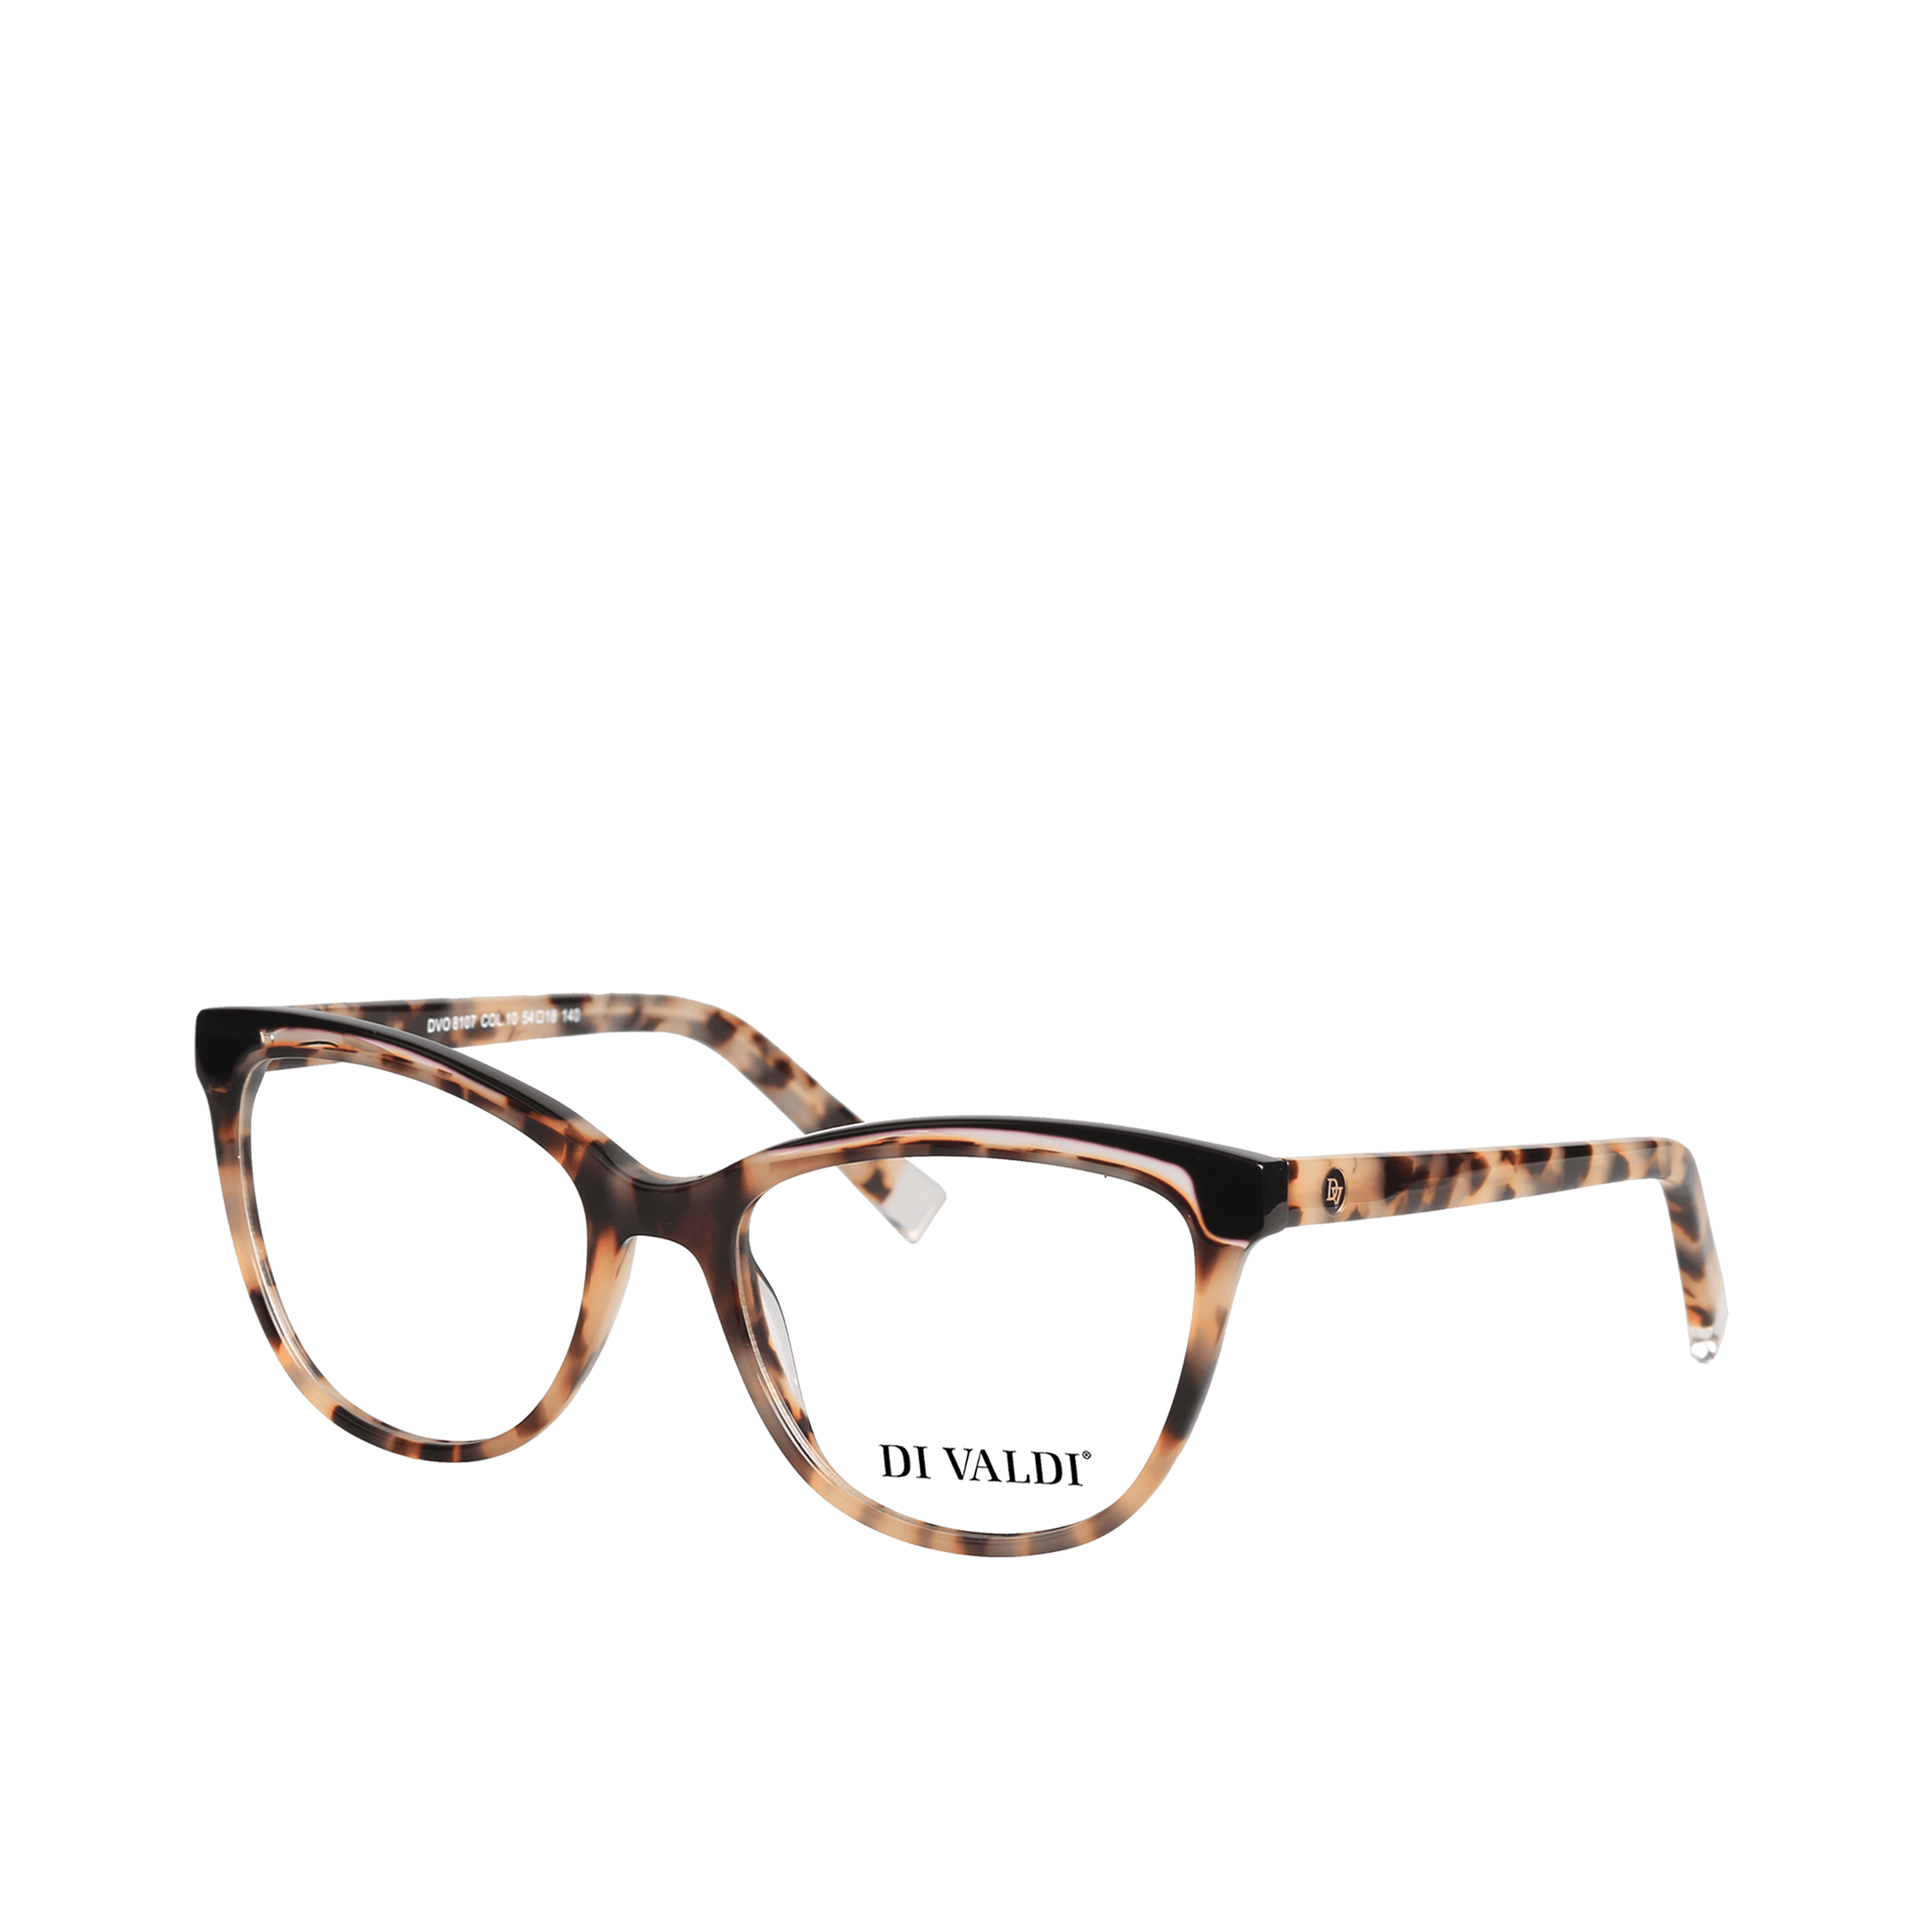 DVO8107 - Eyeglasses frame – Di Valdi